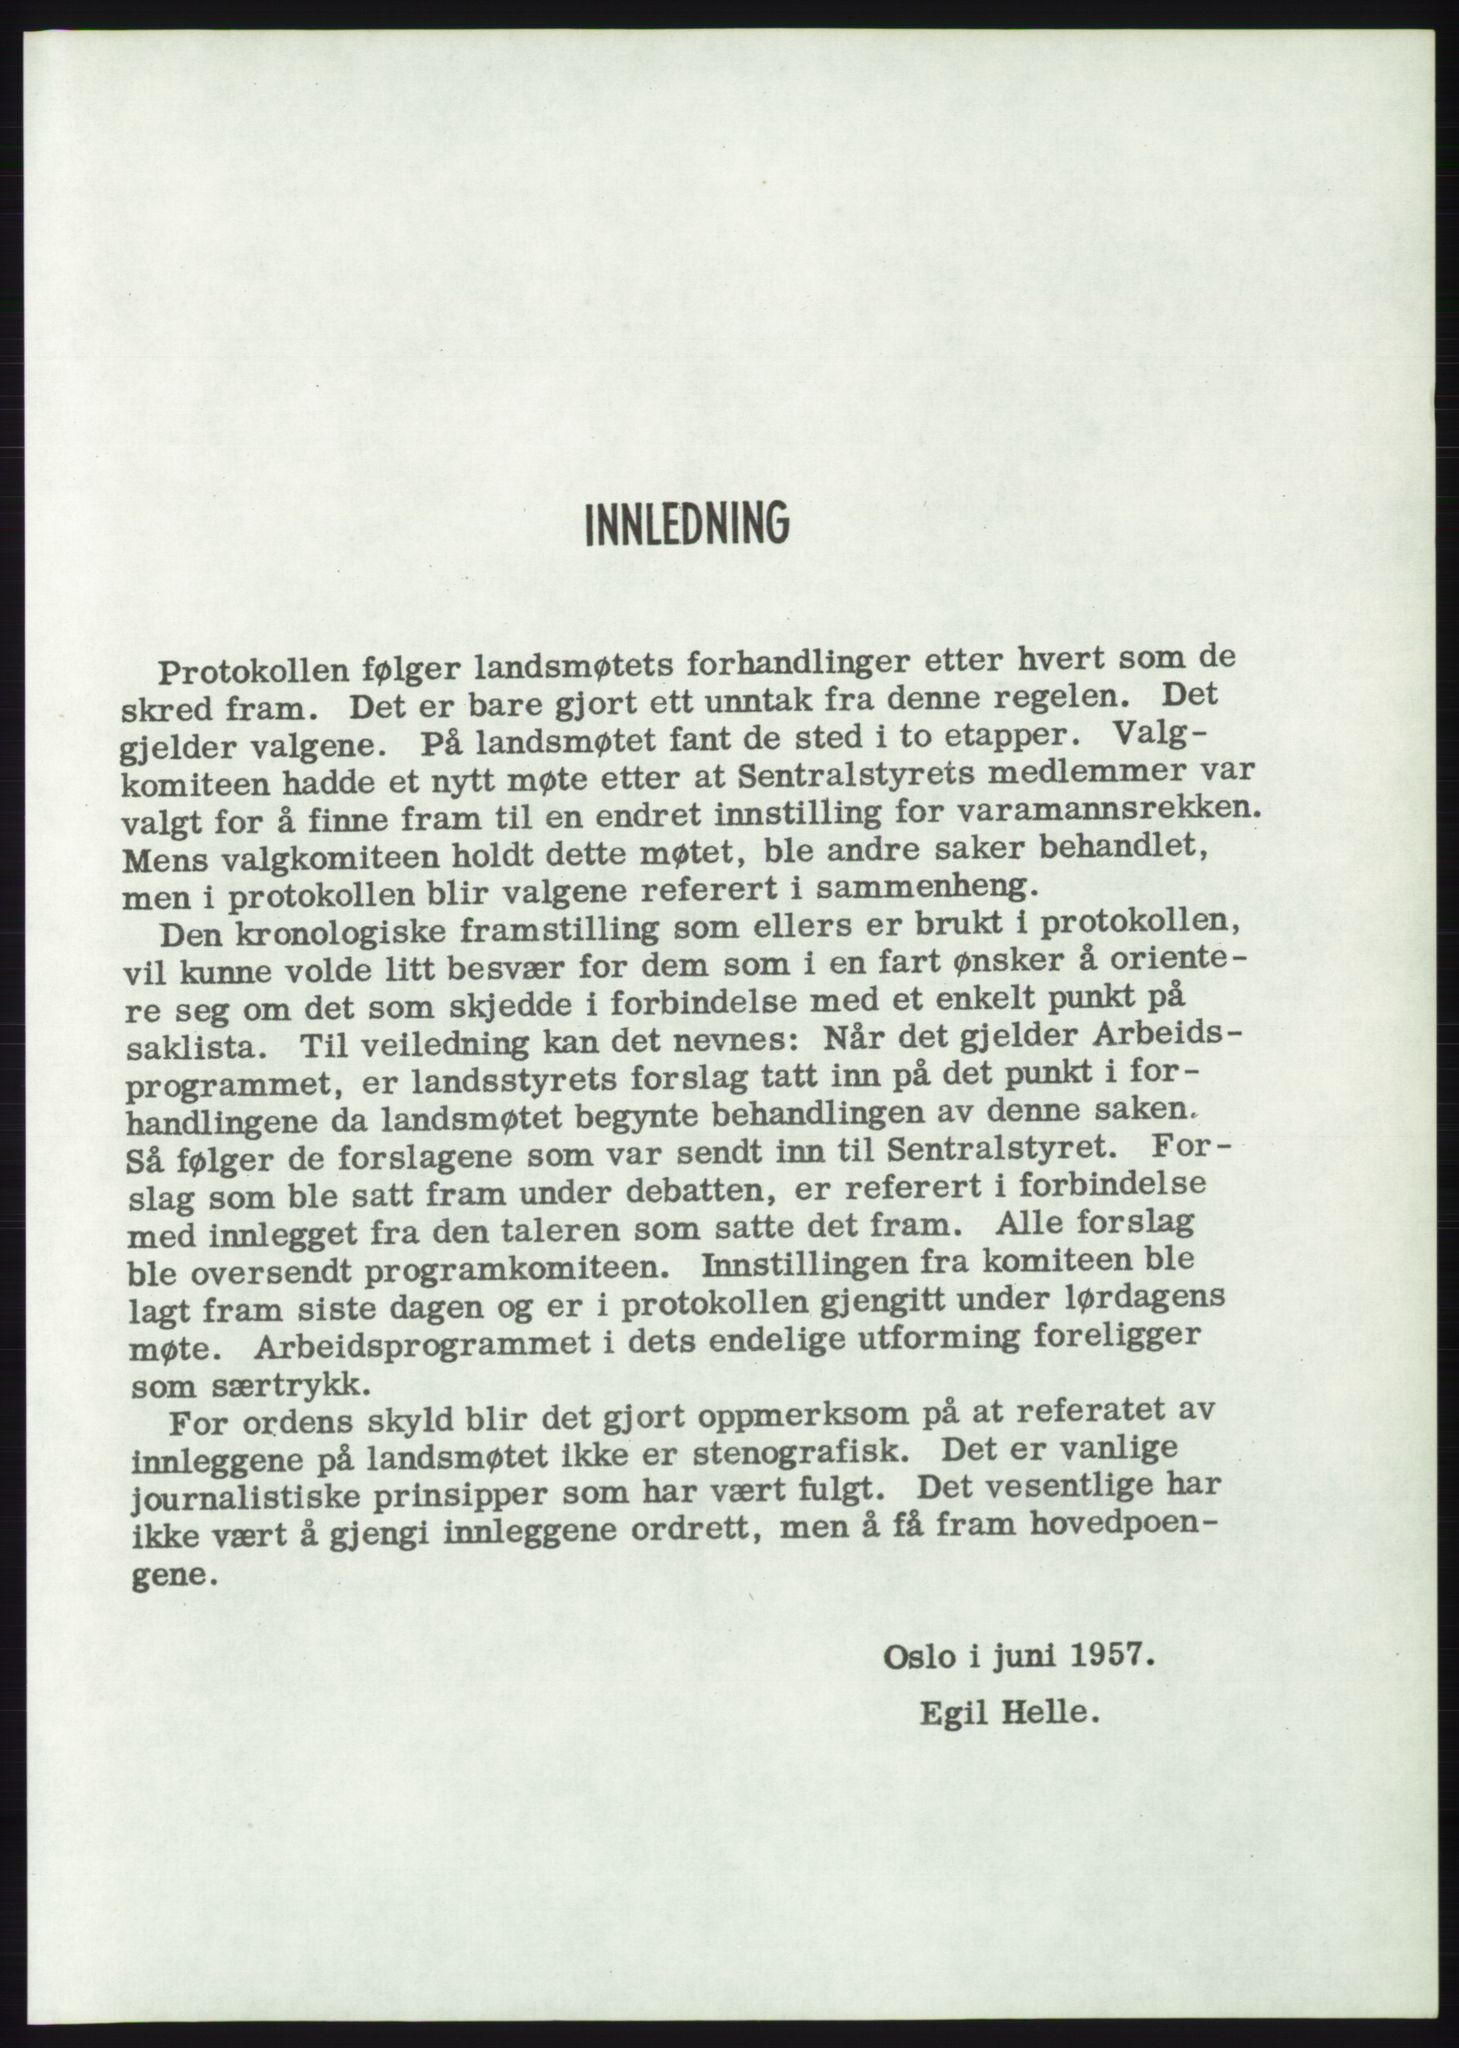 Det norske Arbeiderparti - publikasjoner, AAB/-/-/-: Protokoll over forhandlingene på det 36. ordinære landsmøte 30.-31. mai og 1. juni 1957 i Oslo, 1957